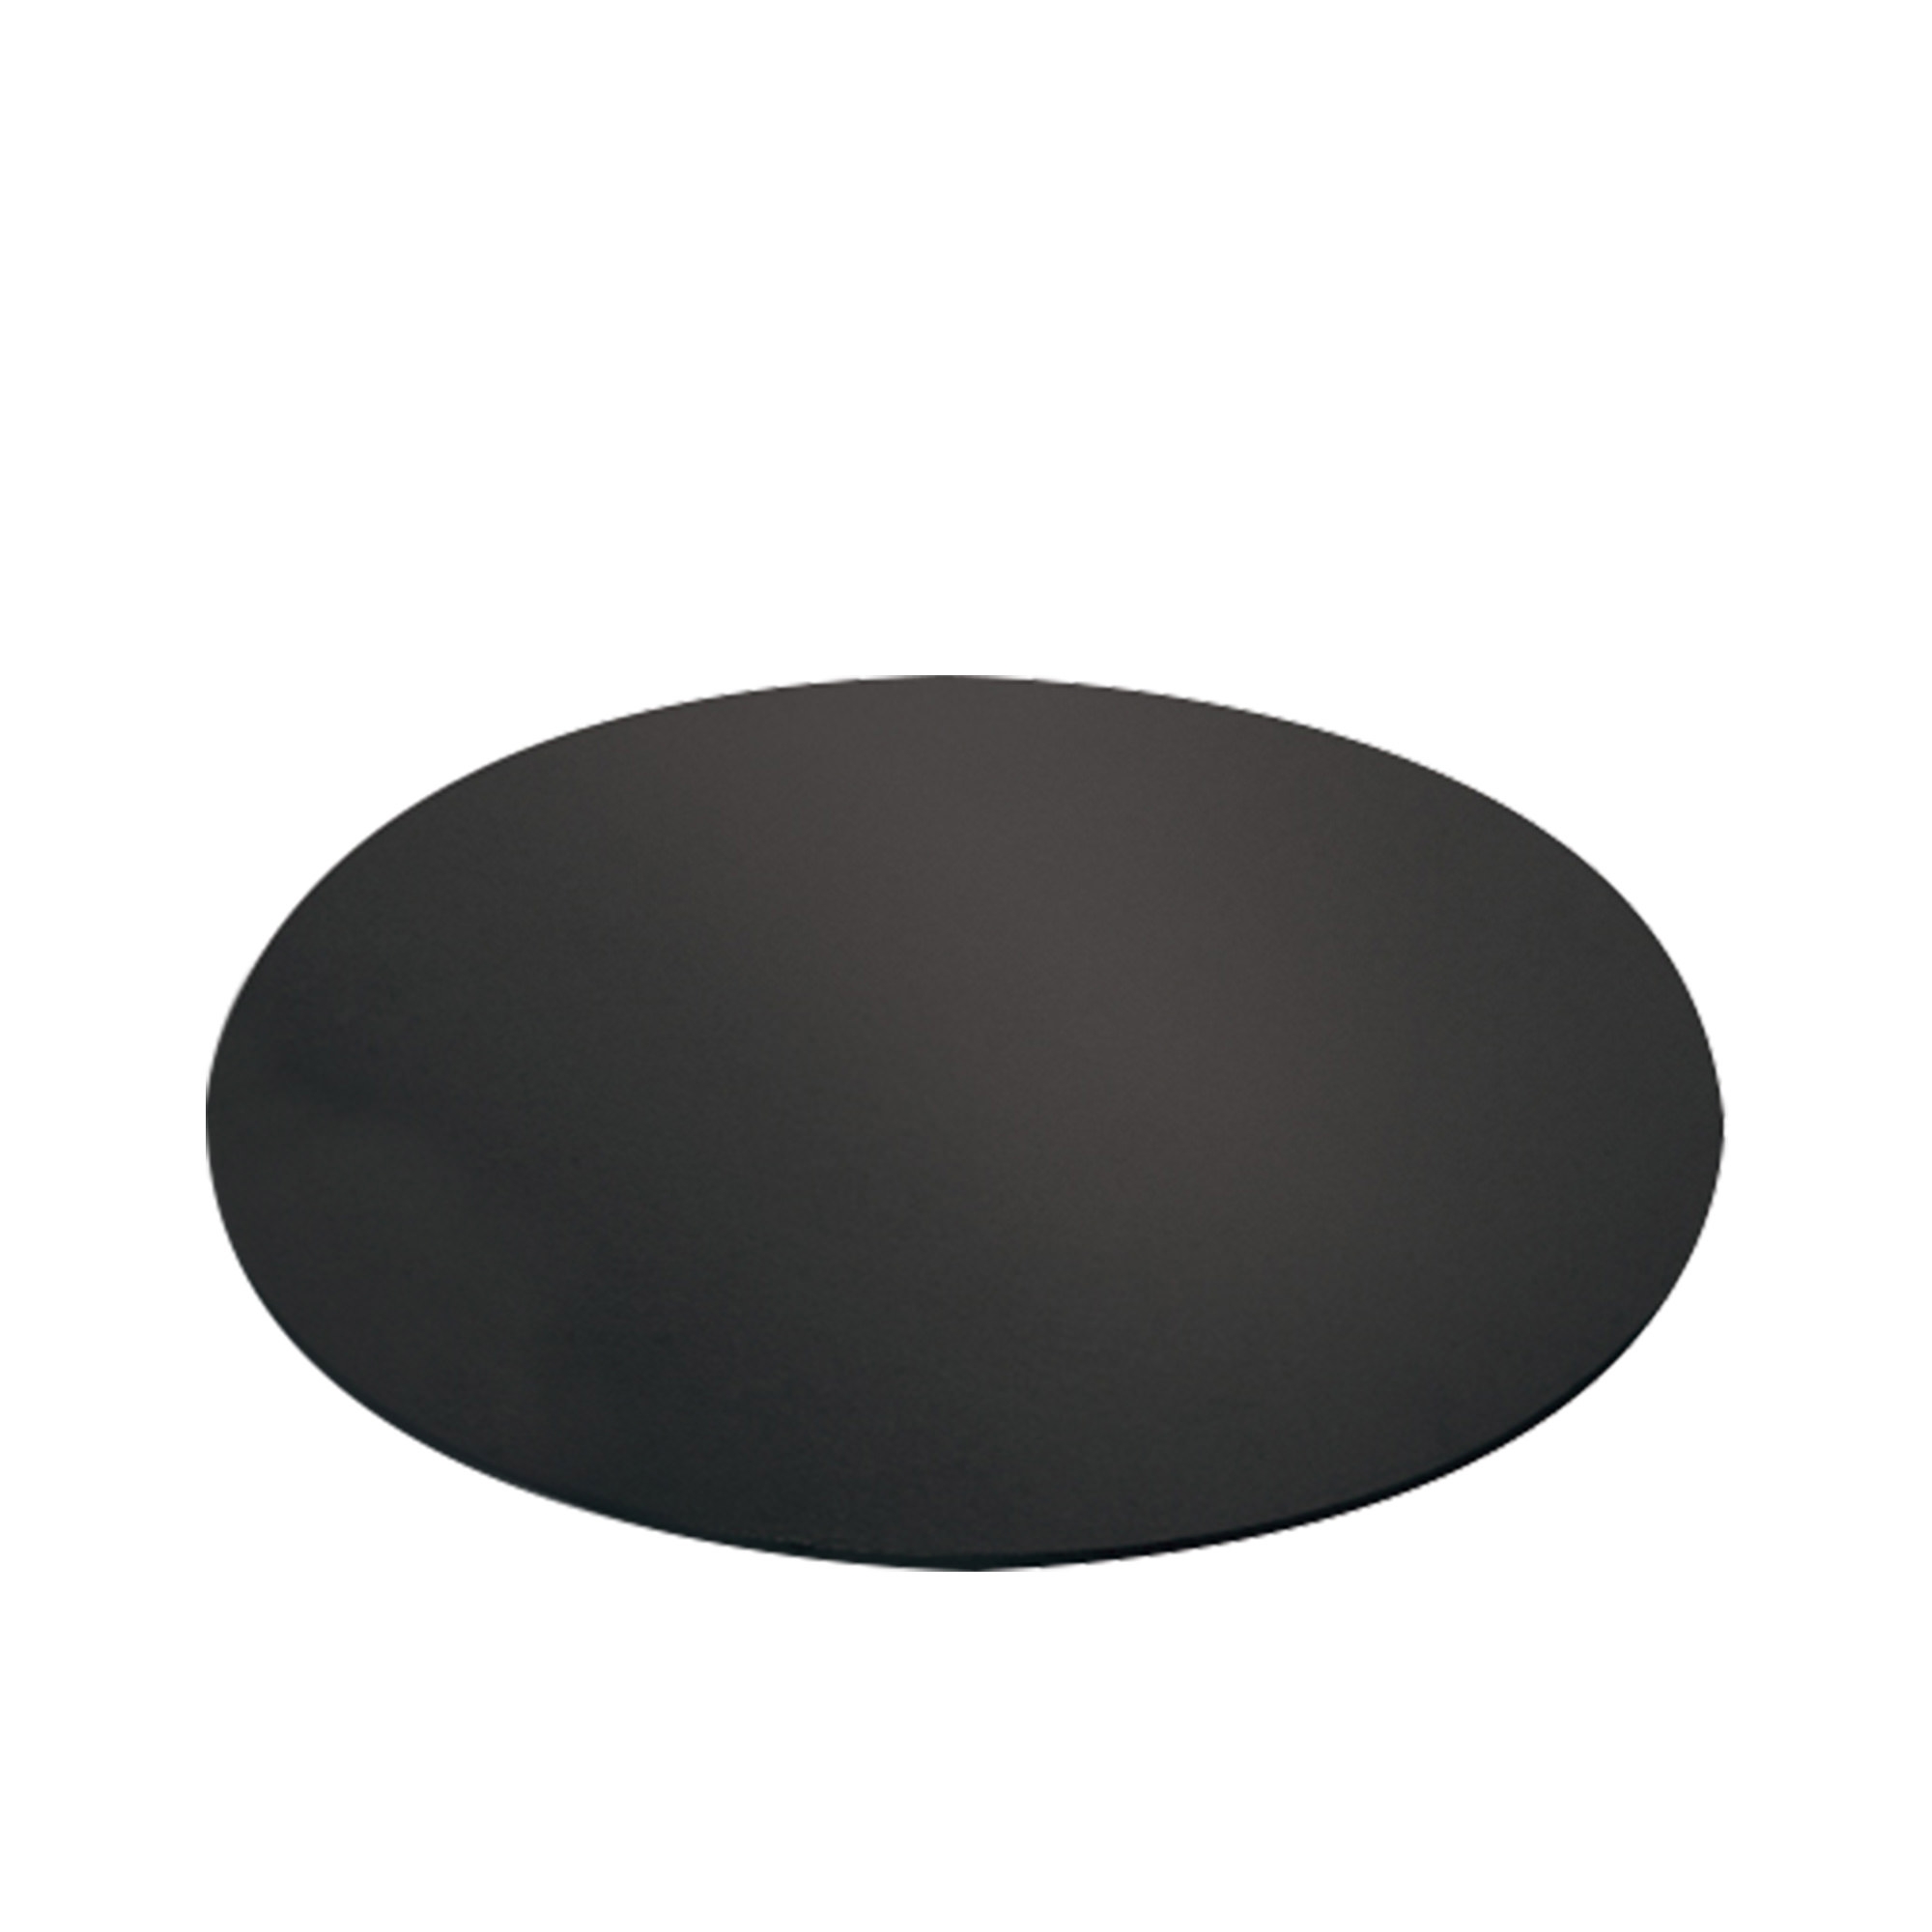 Mondo Round Cake Board 35cm Black Image 1